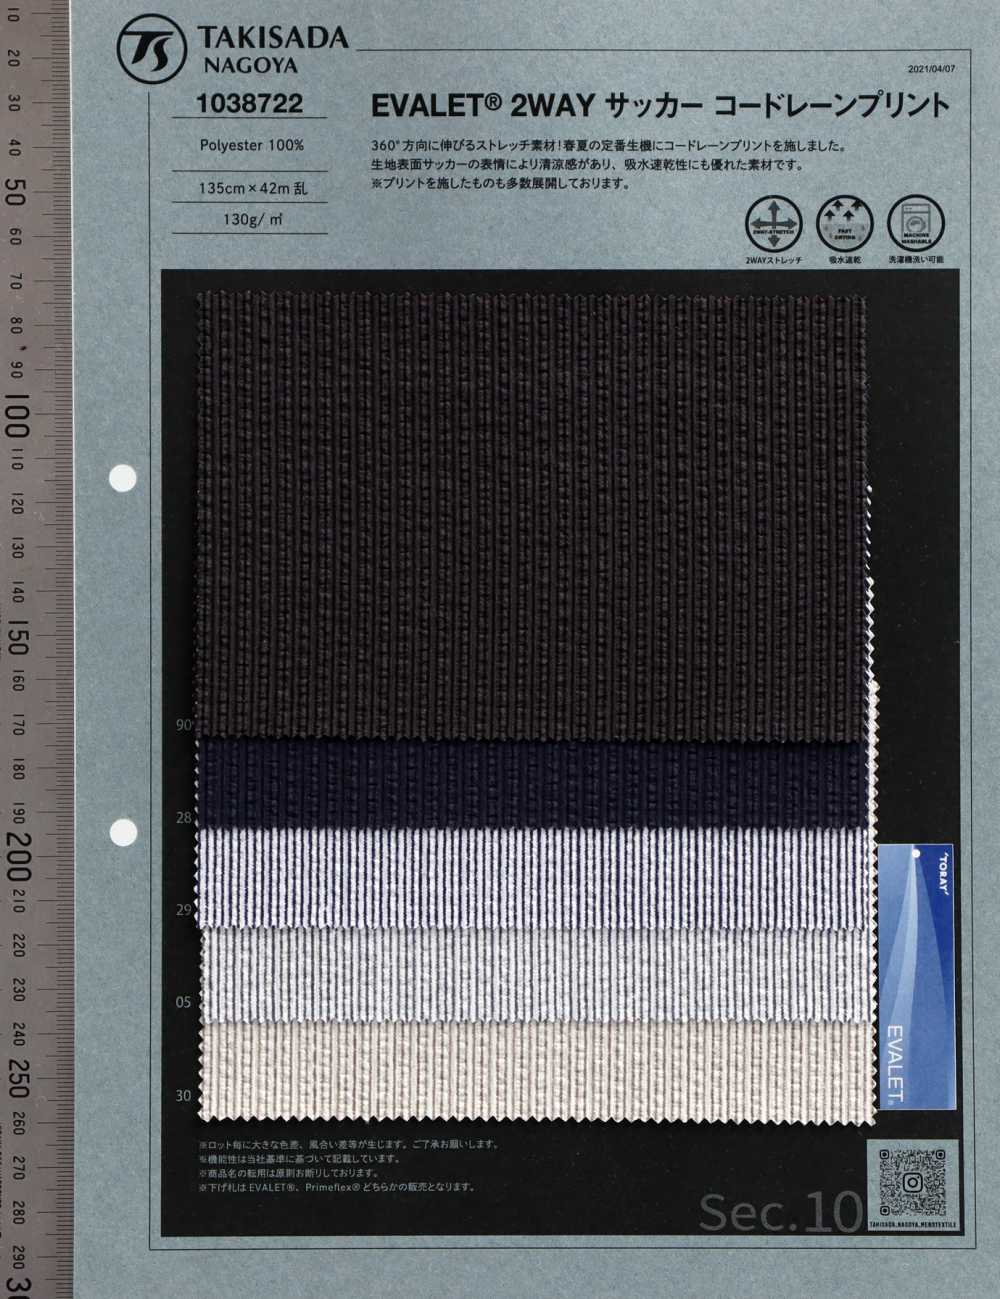 1038722 Patrón De Rayas De Seersucker De EVALET® 2WAY[Fabrica Textil] Takisada Nagoya